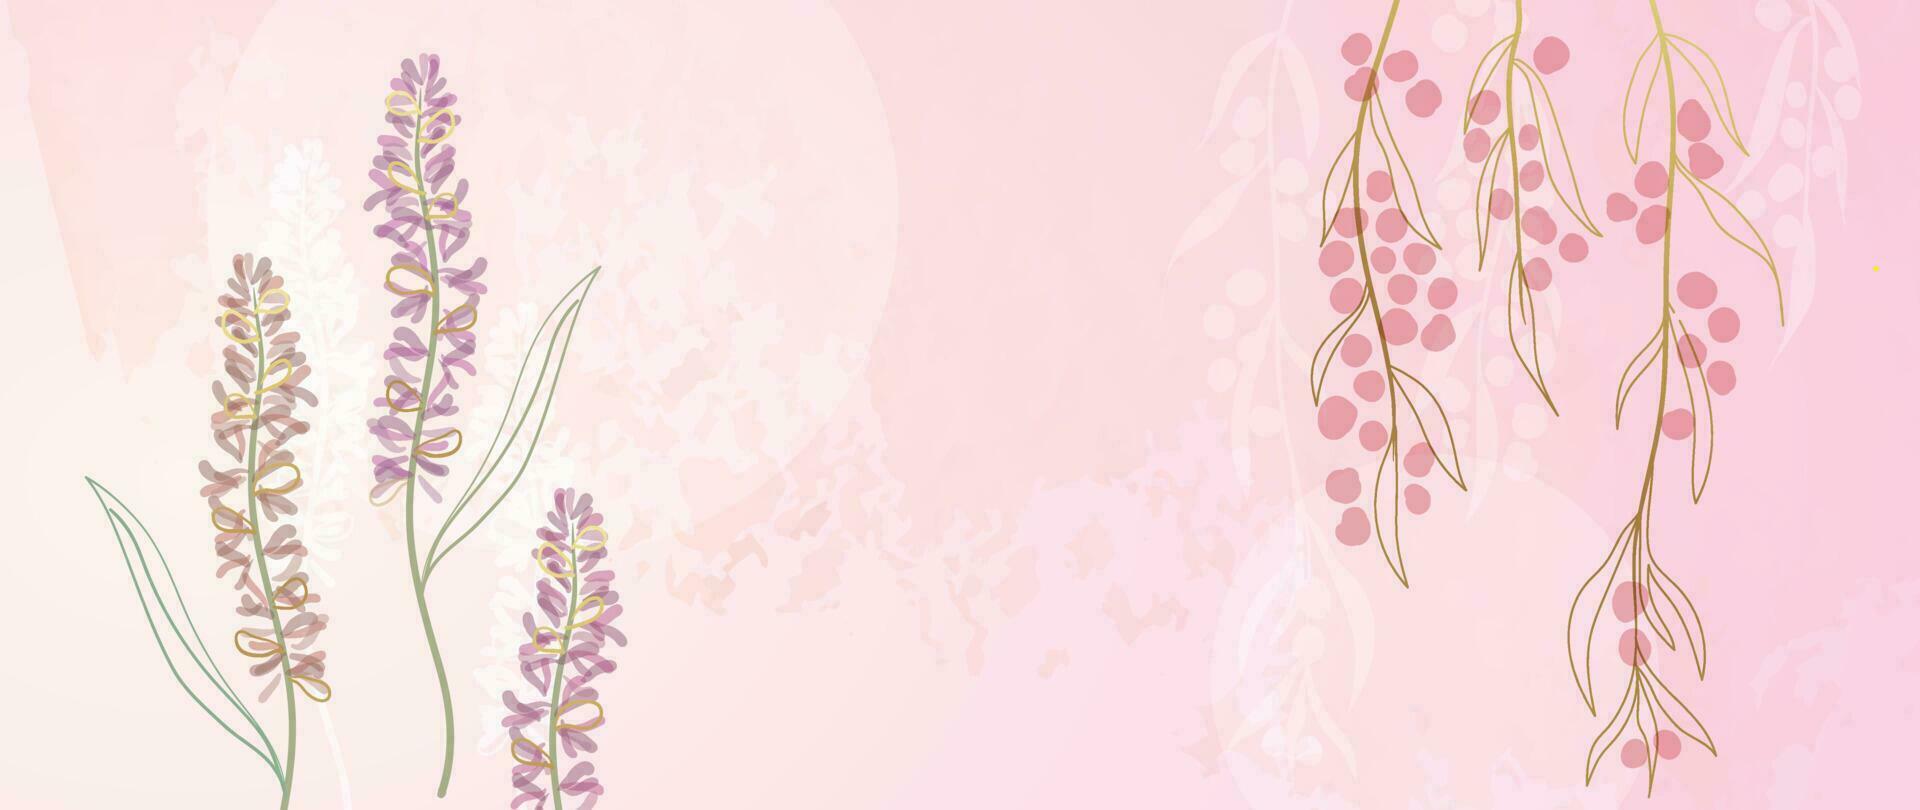 voorjaar bloemen in waterverf vector achtergrond. luxe bloem behang ontwerp met lavendel bloemen, lijn kunst, gouden textuur. elegant goud botanisch illustratie geschikt voor kleding stof, afdrukken, omslag.